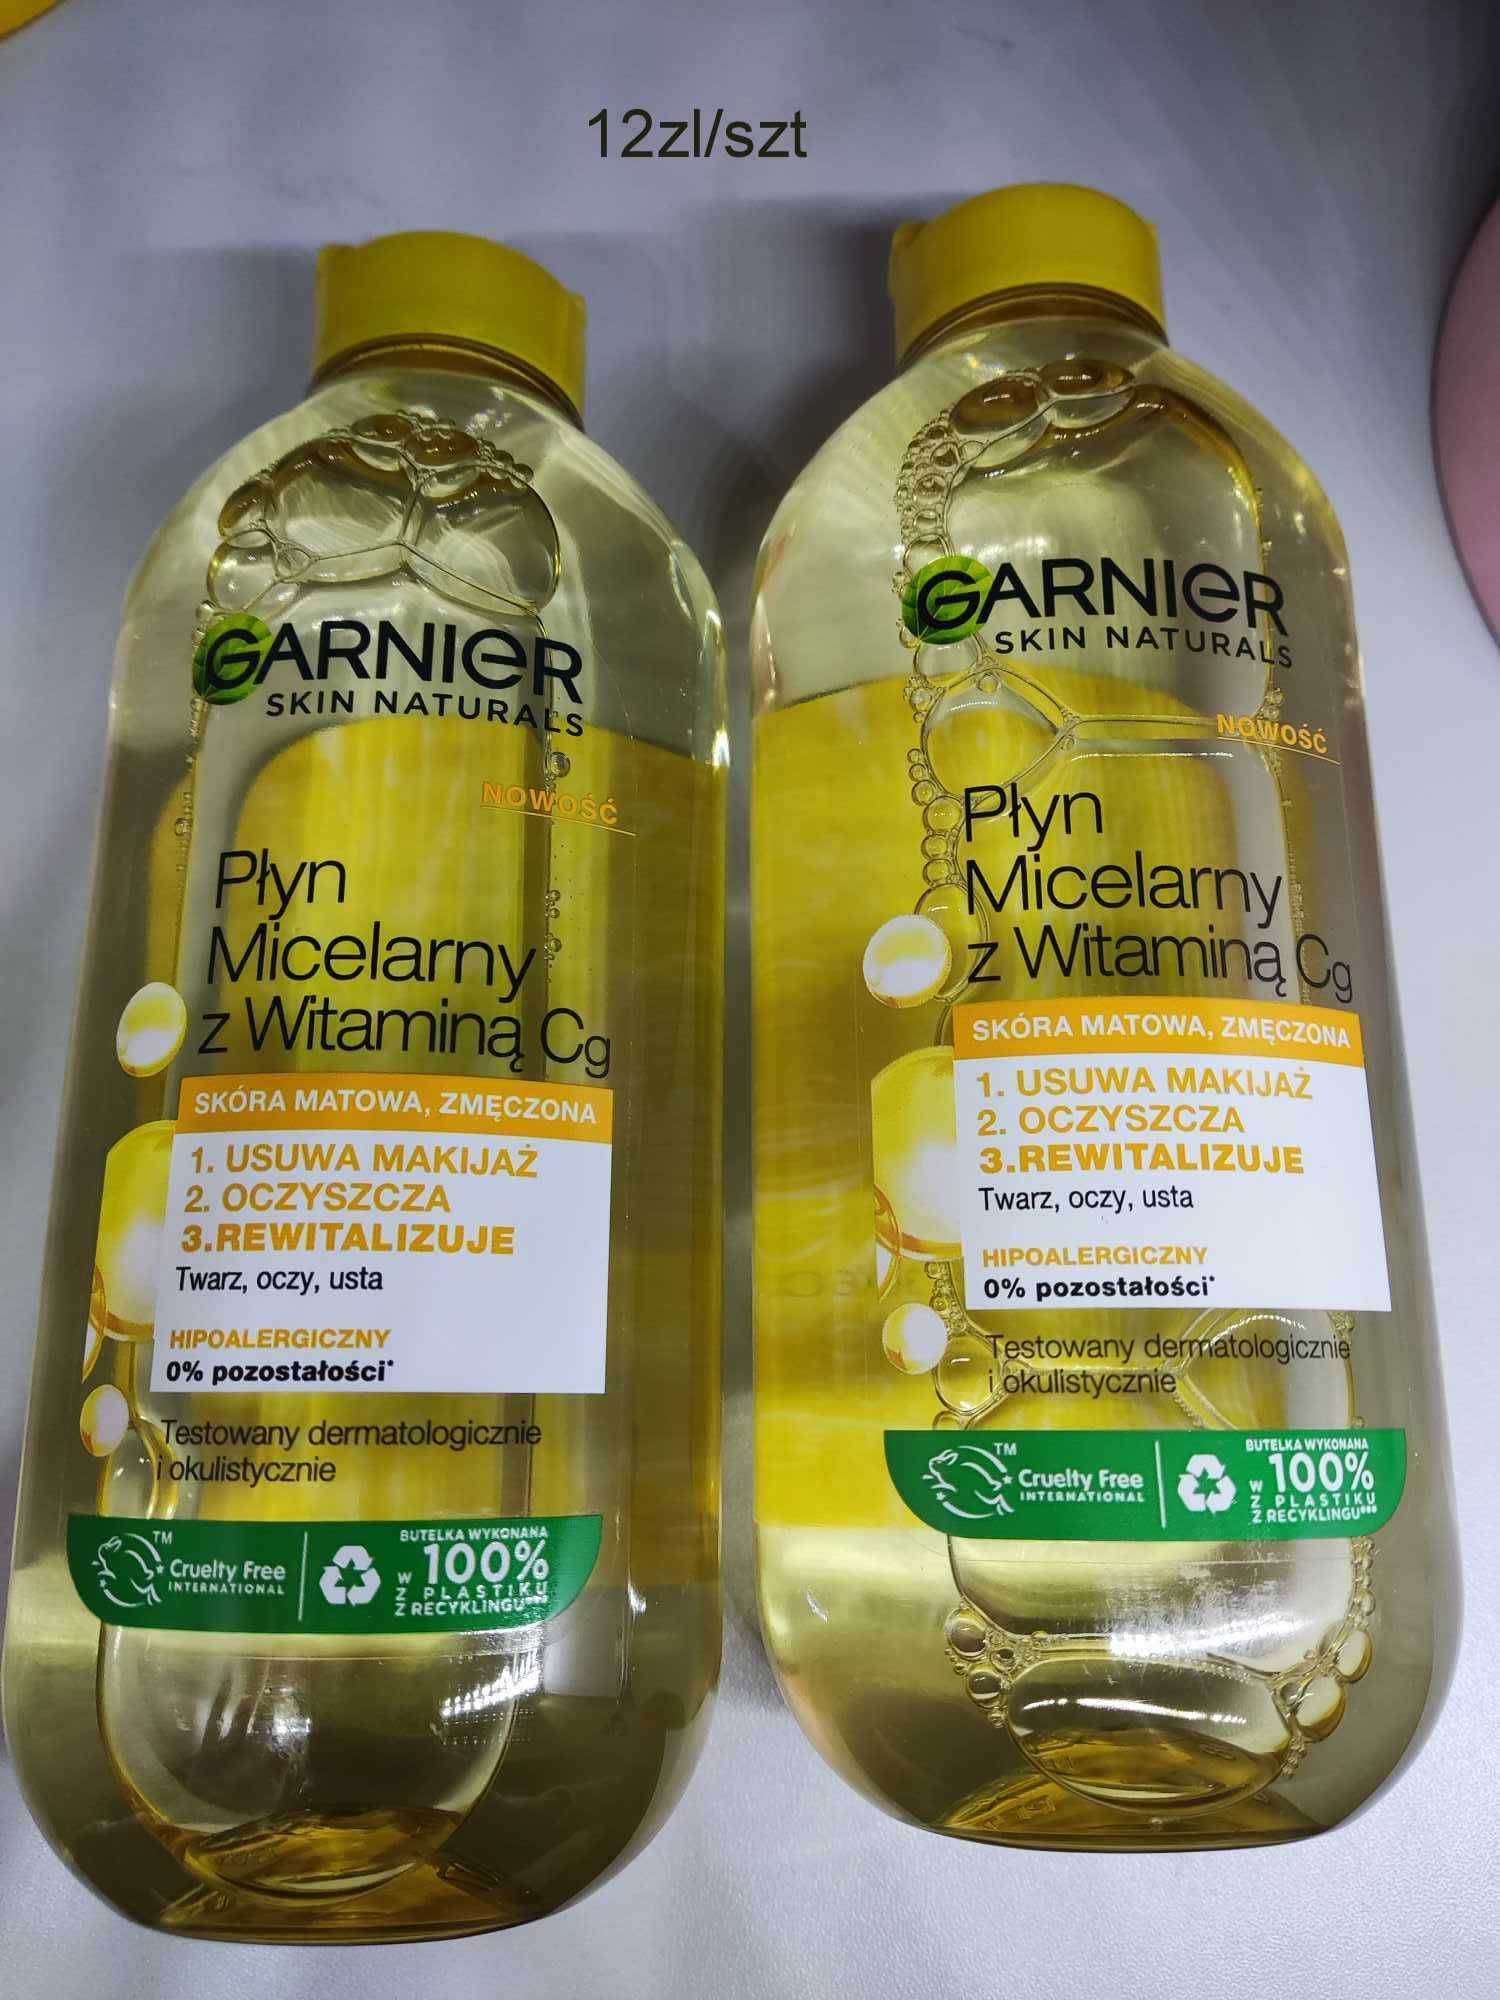 Garnier, Skin Naturals, Płyn micelarny z witaminą Cg 2x